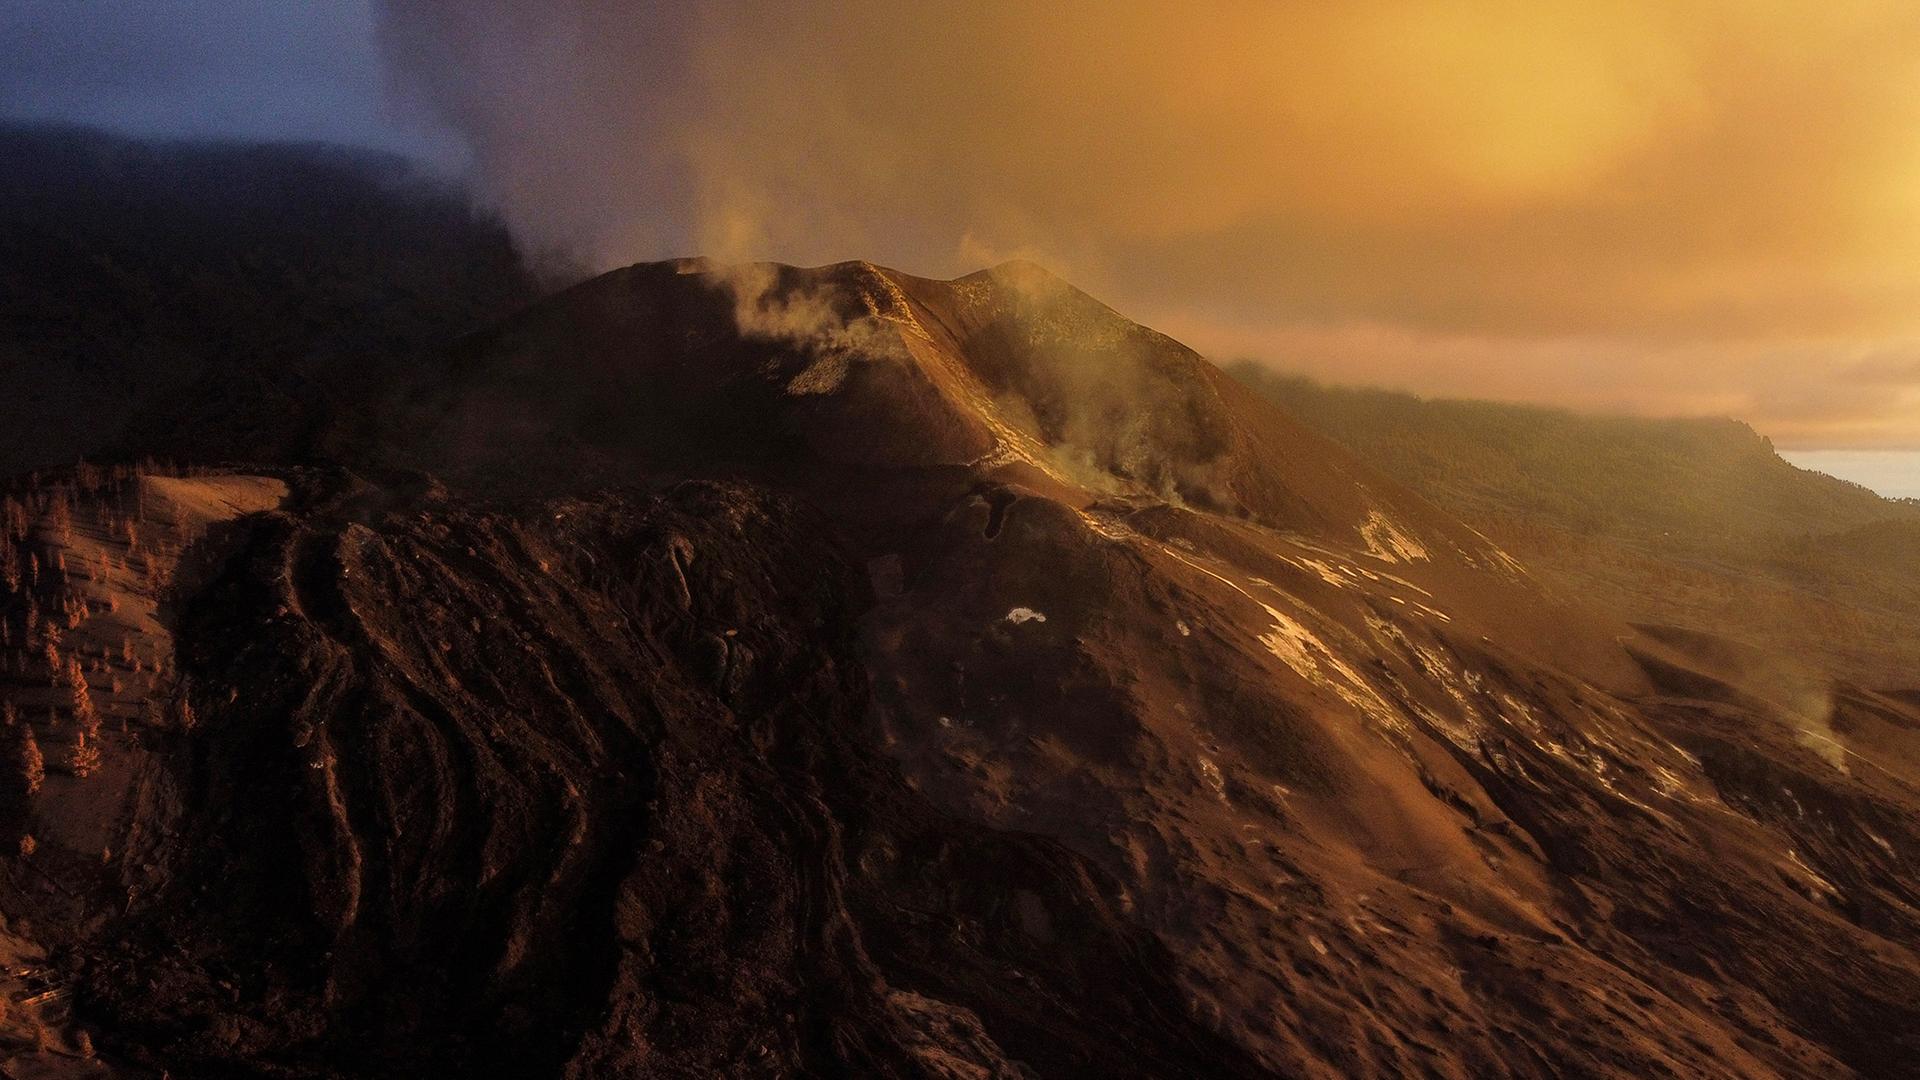 Luftaufnahme des Vulkans Cumbre Vieja in Tacande auf der Kanarischen Insel La Palma, mit aufteigenden Rauchschwaden.